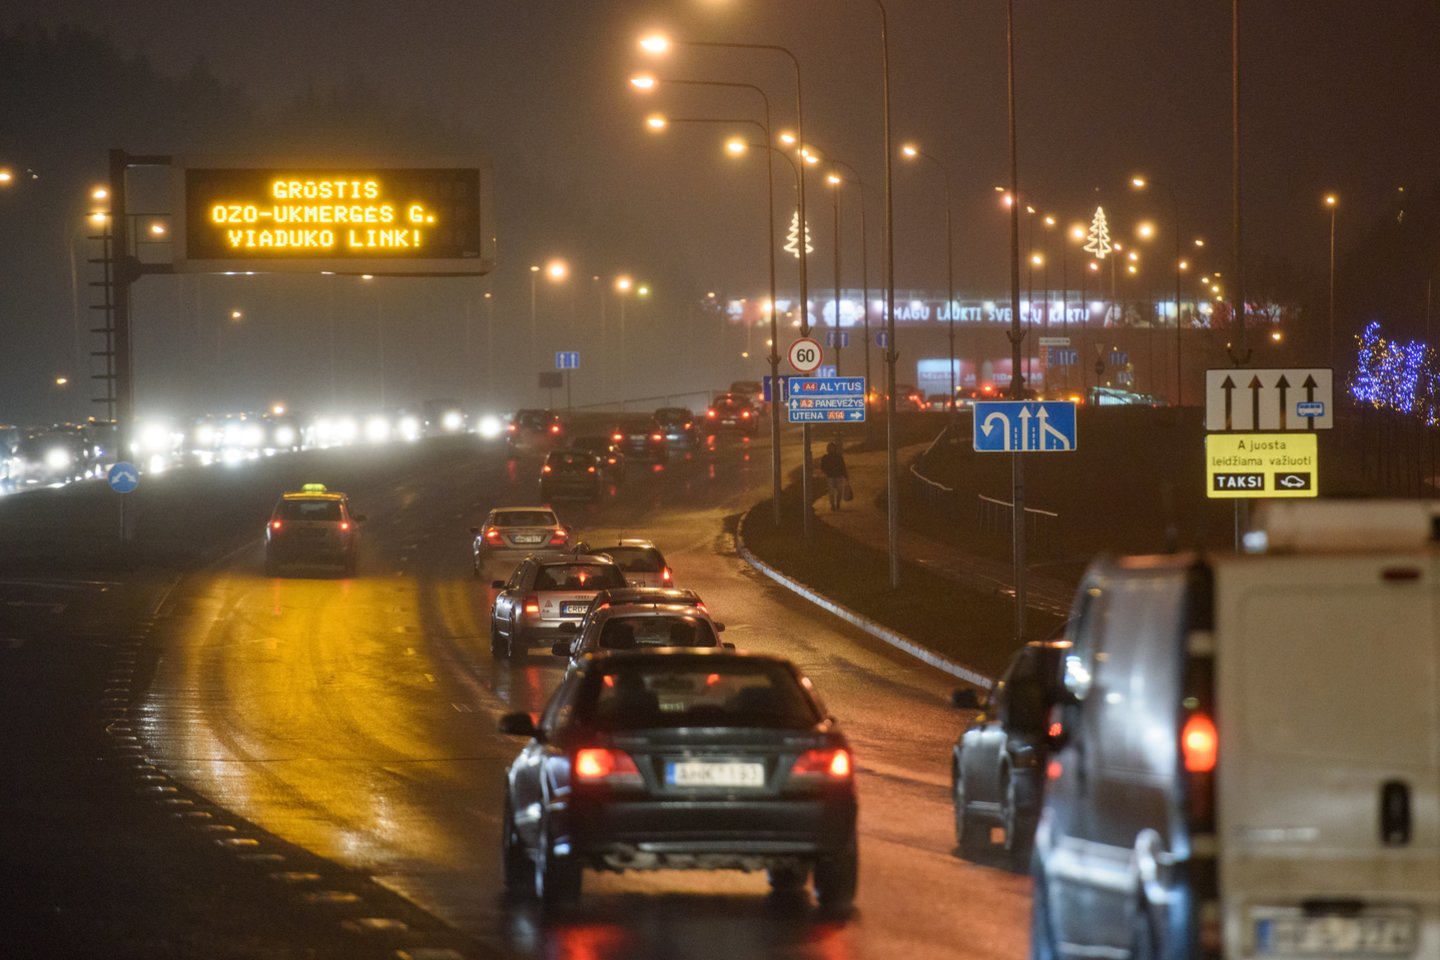 Ketvirtadienio naktį eismo sąlygas sunkins plikledis, įspėja Automobilių kelių direkcija.<br>D.Umbraso nuotr.